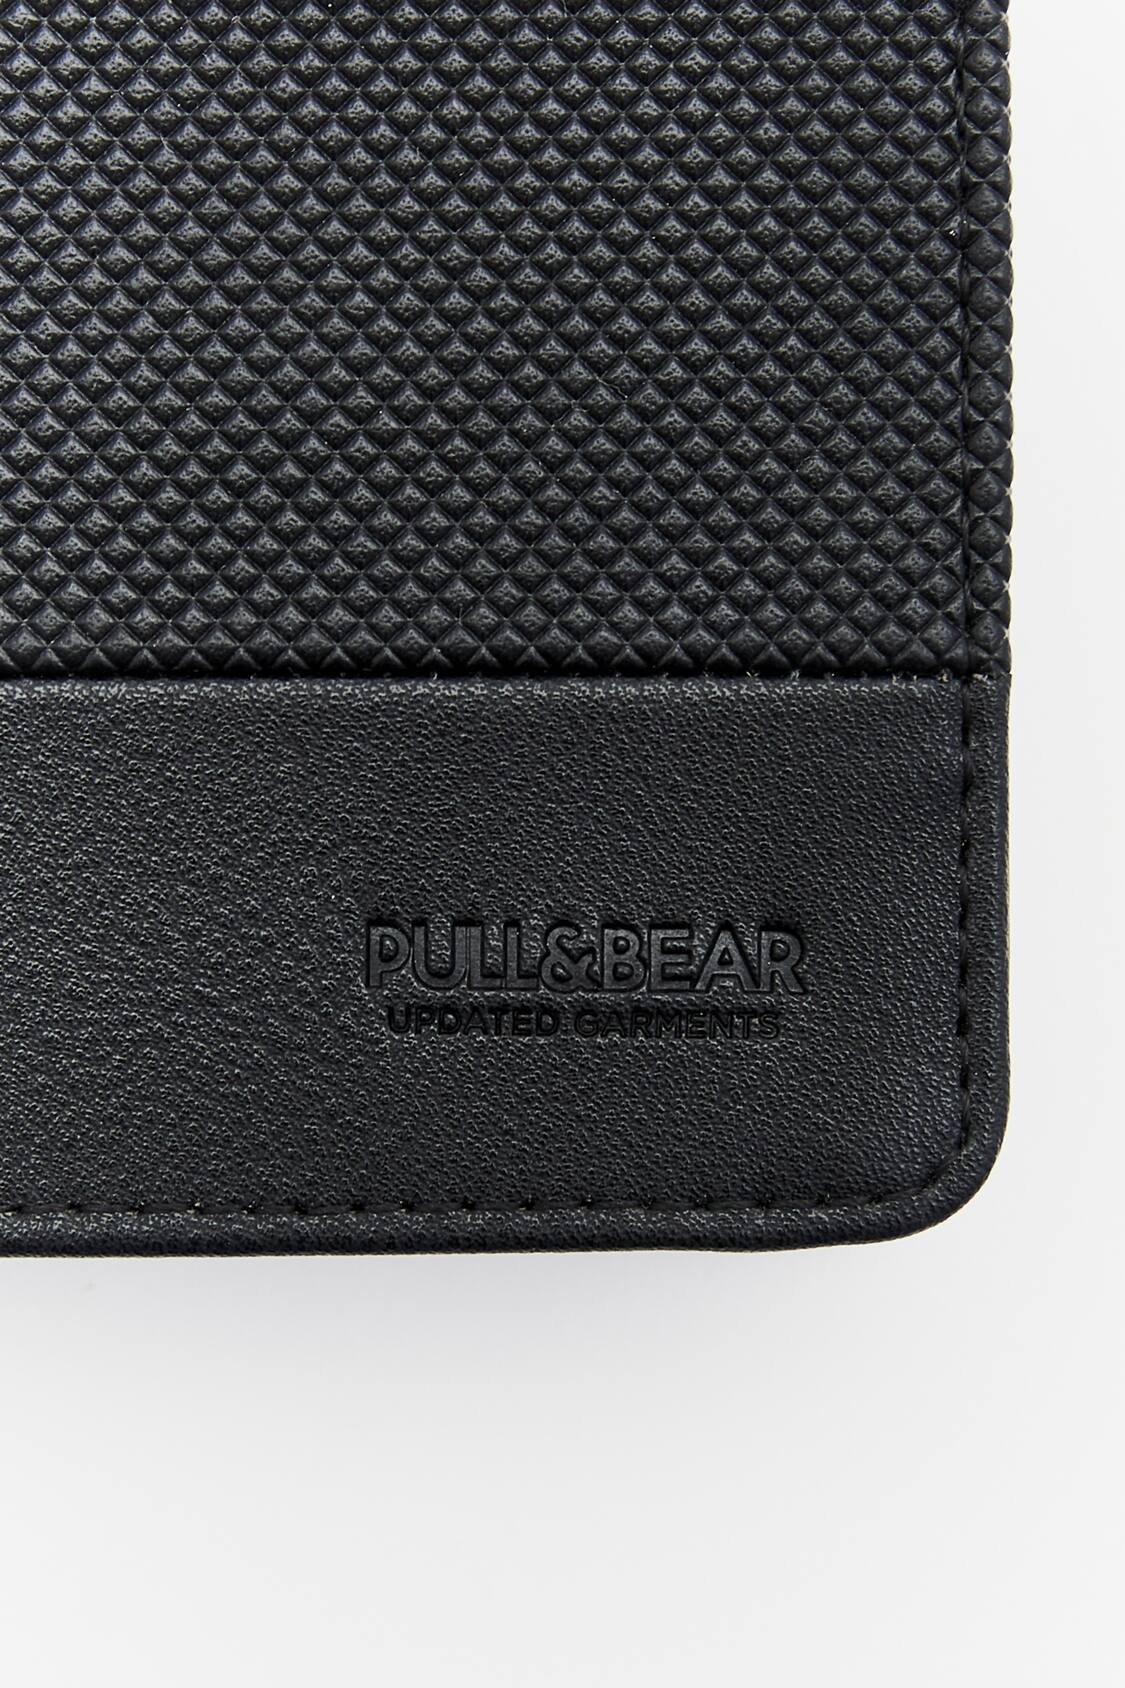 Pull&Bear Men's Black Wallet